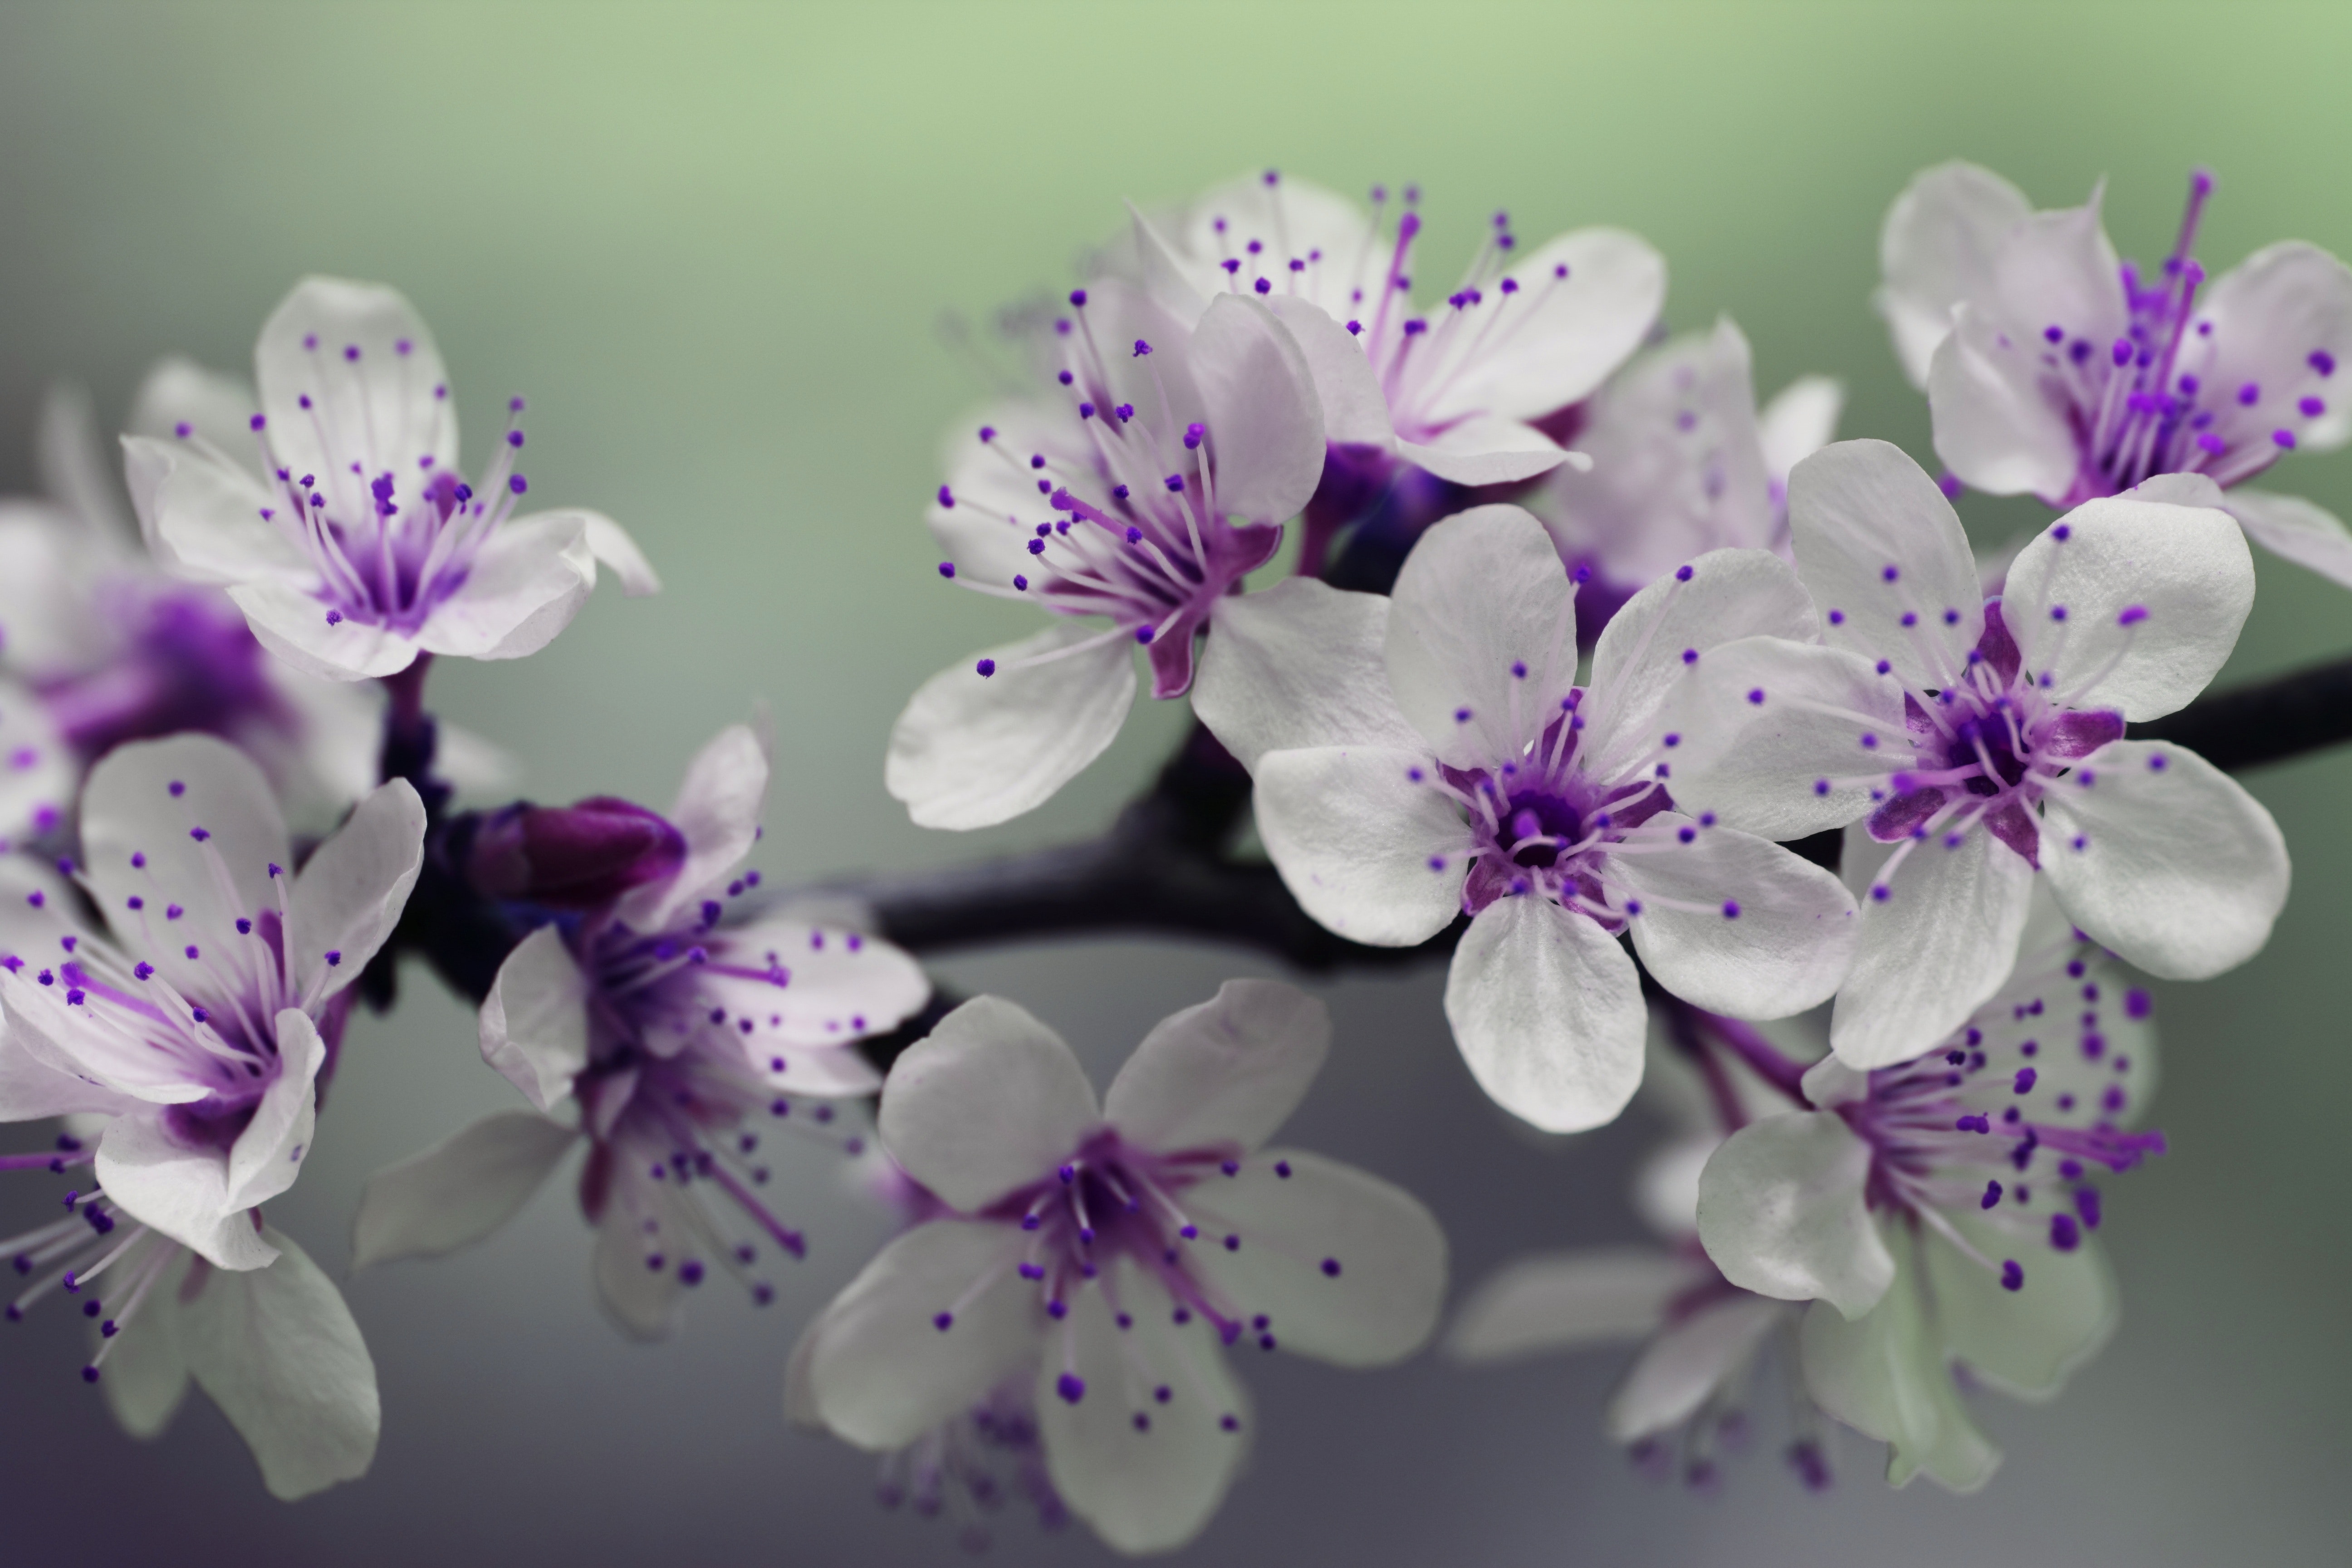 Best Purple Flowers Photo · 100% Free Downloads